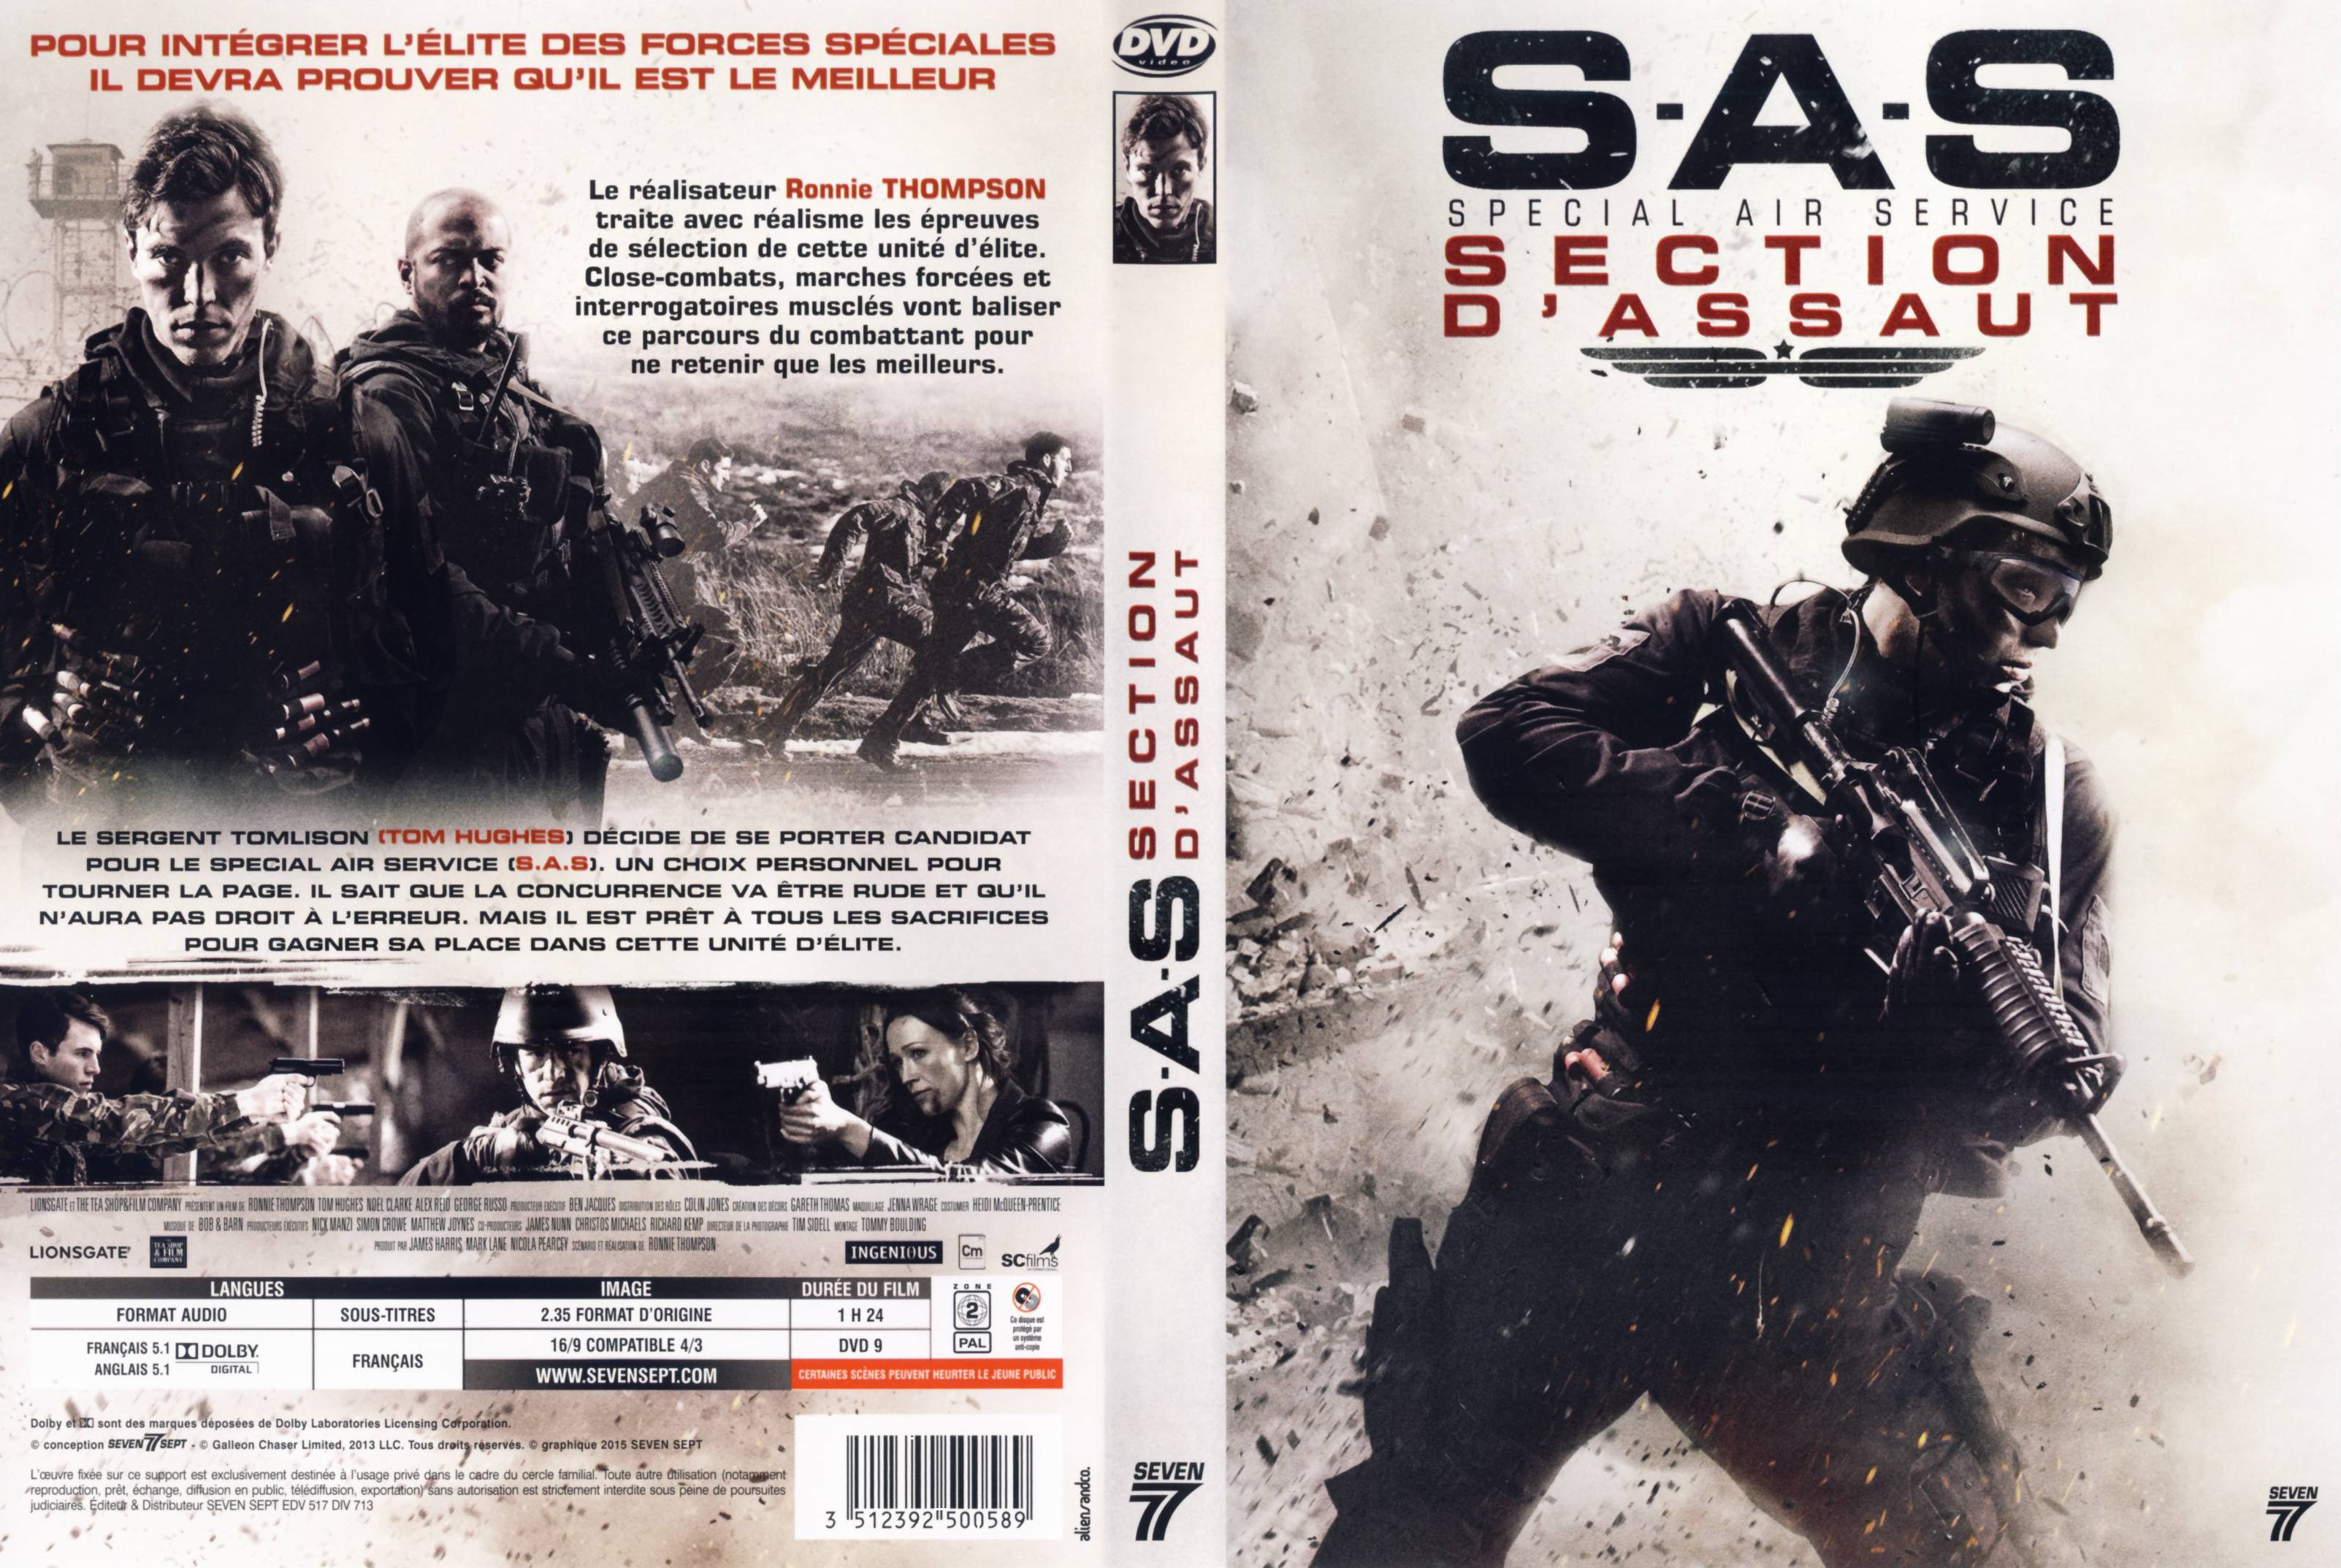 Jaquette DVD SAS Section d